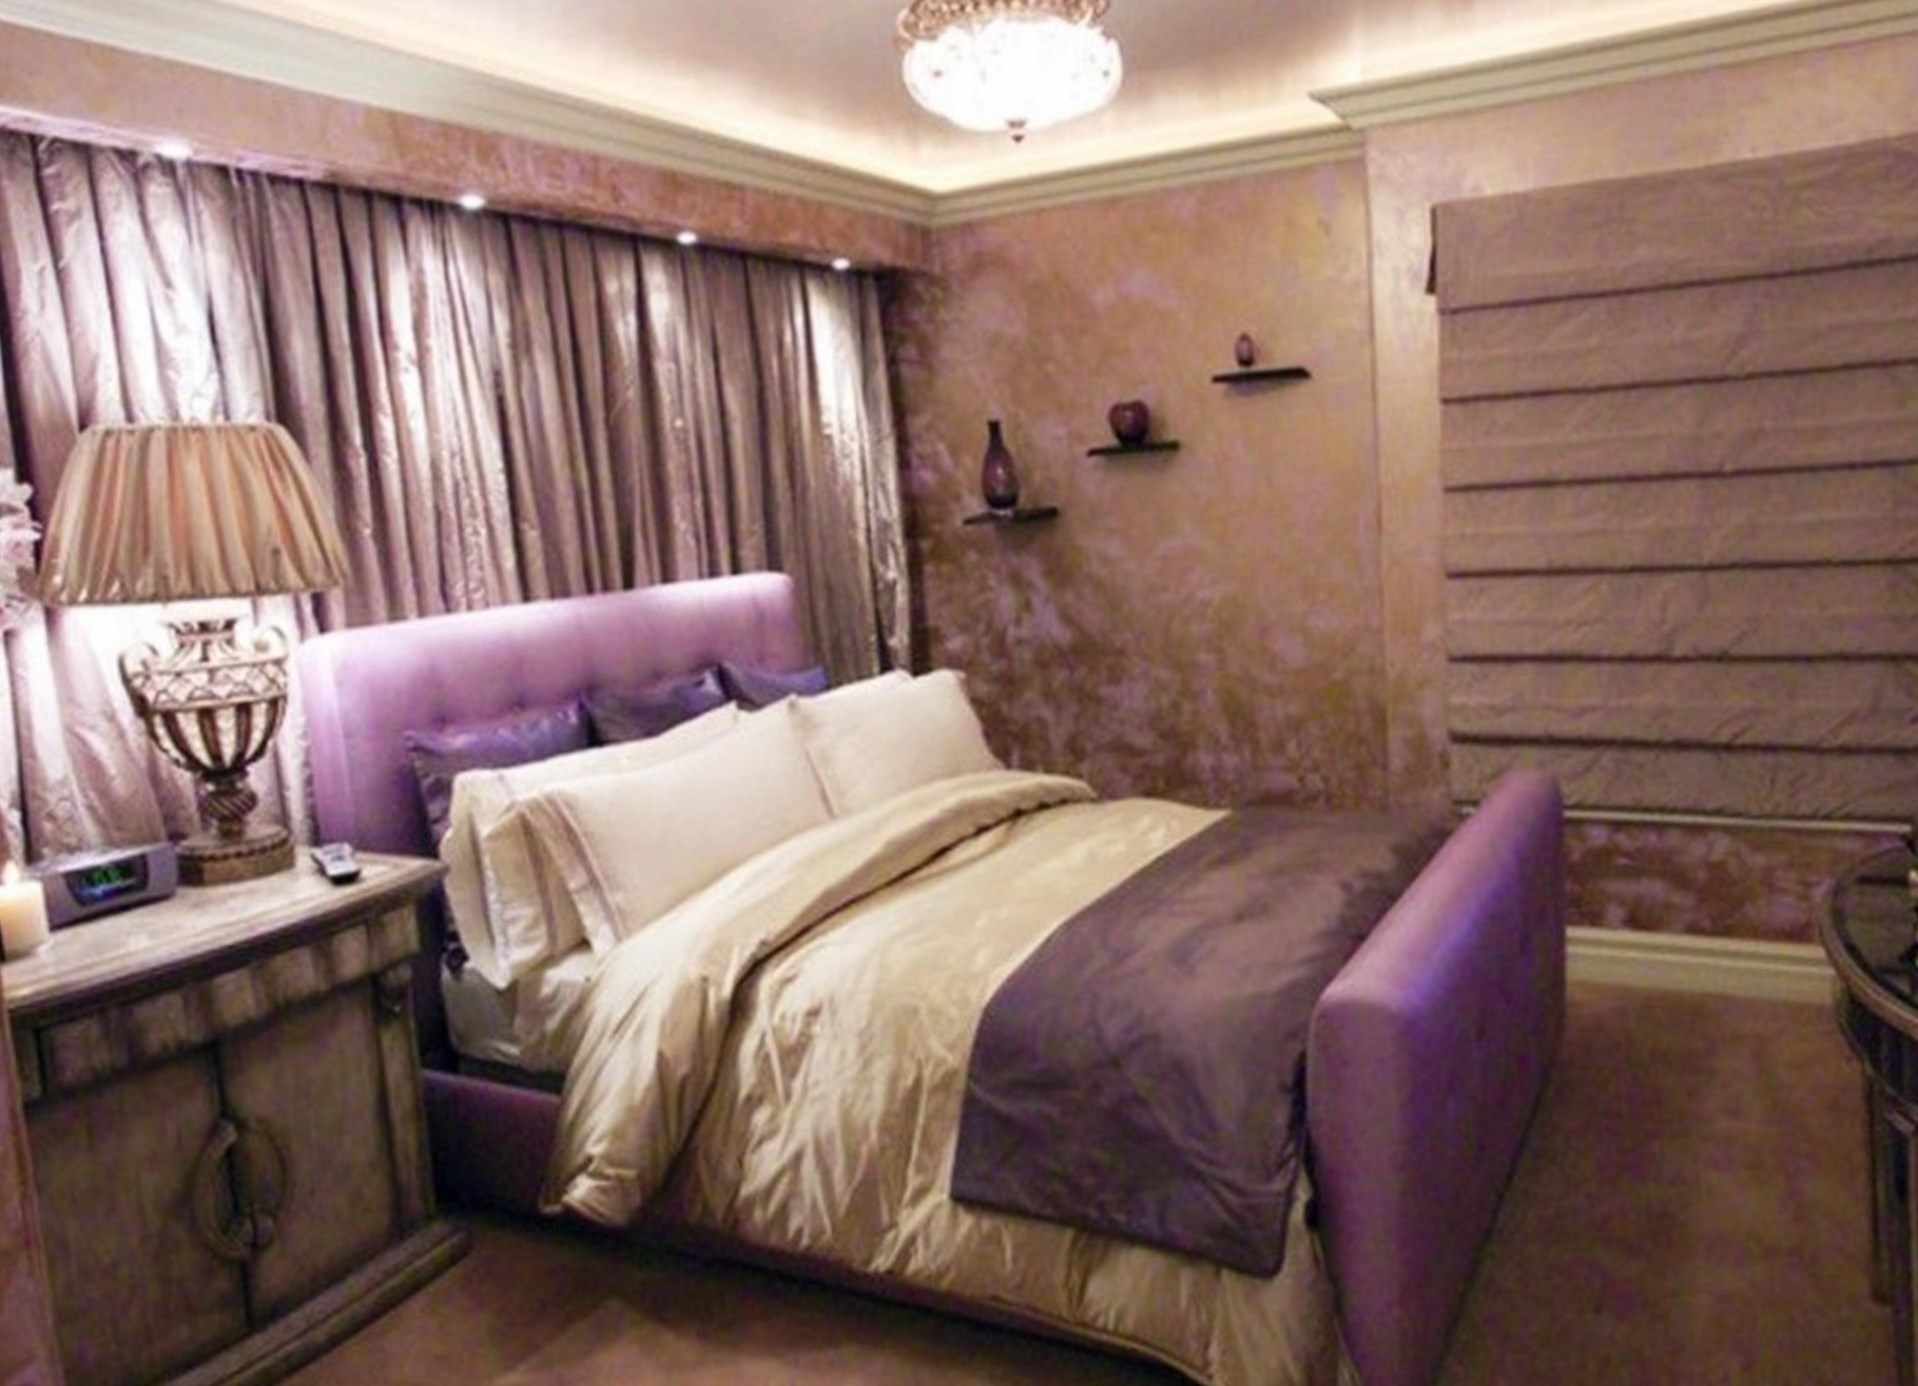 het idee van een heldere decoratie van het wanddecor in de slaapkamer